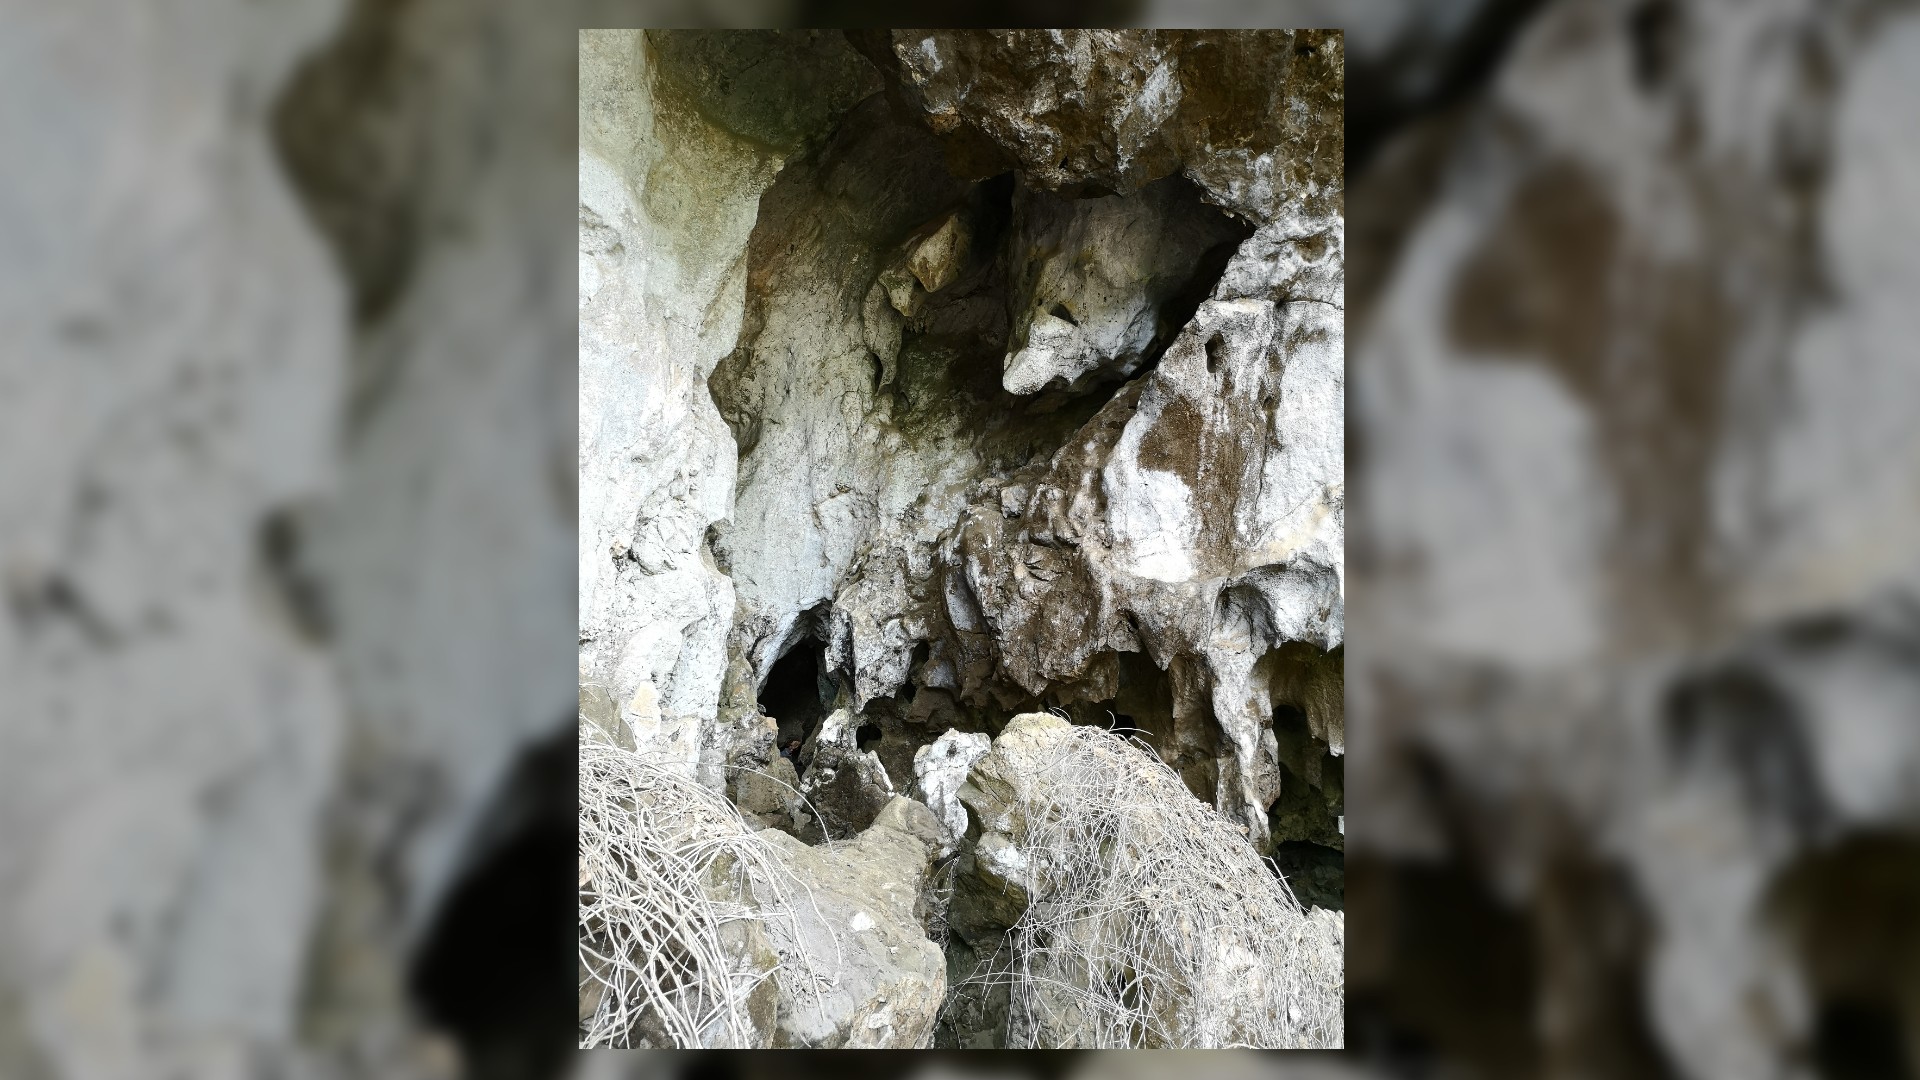 Dies ist ein Bild des Eingangs zur Cobra-Höhle in Laos.  Es ist eine felsige und schroffe Höhle mit vielen Verstecken.  Im Vordergrund gibt es ein paar lange und dünne Stränge weißer Vegetation.